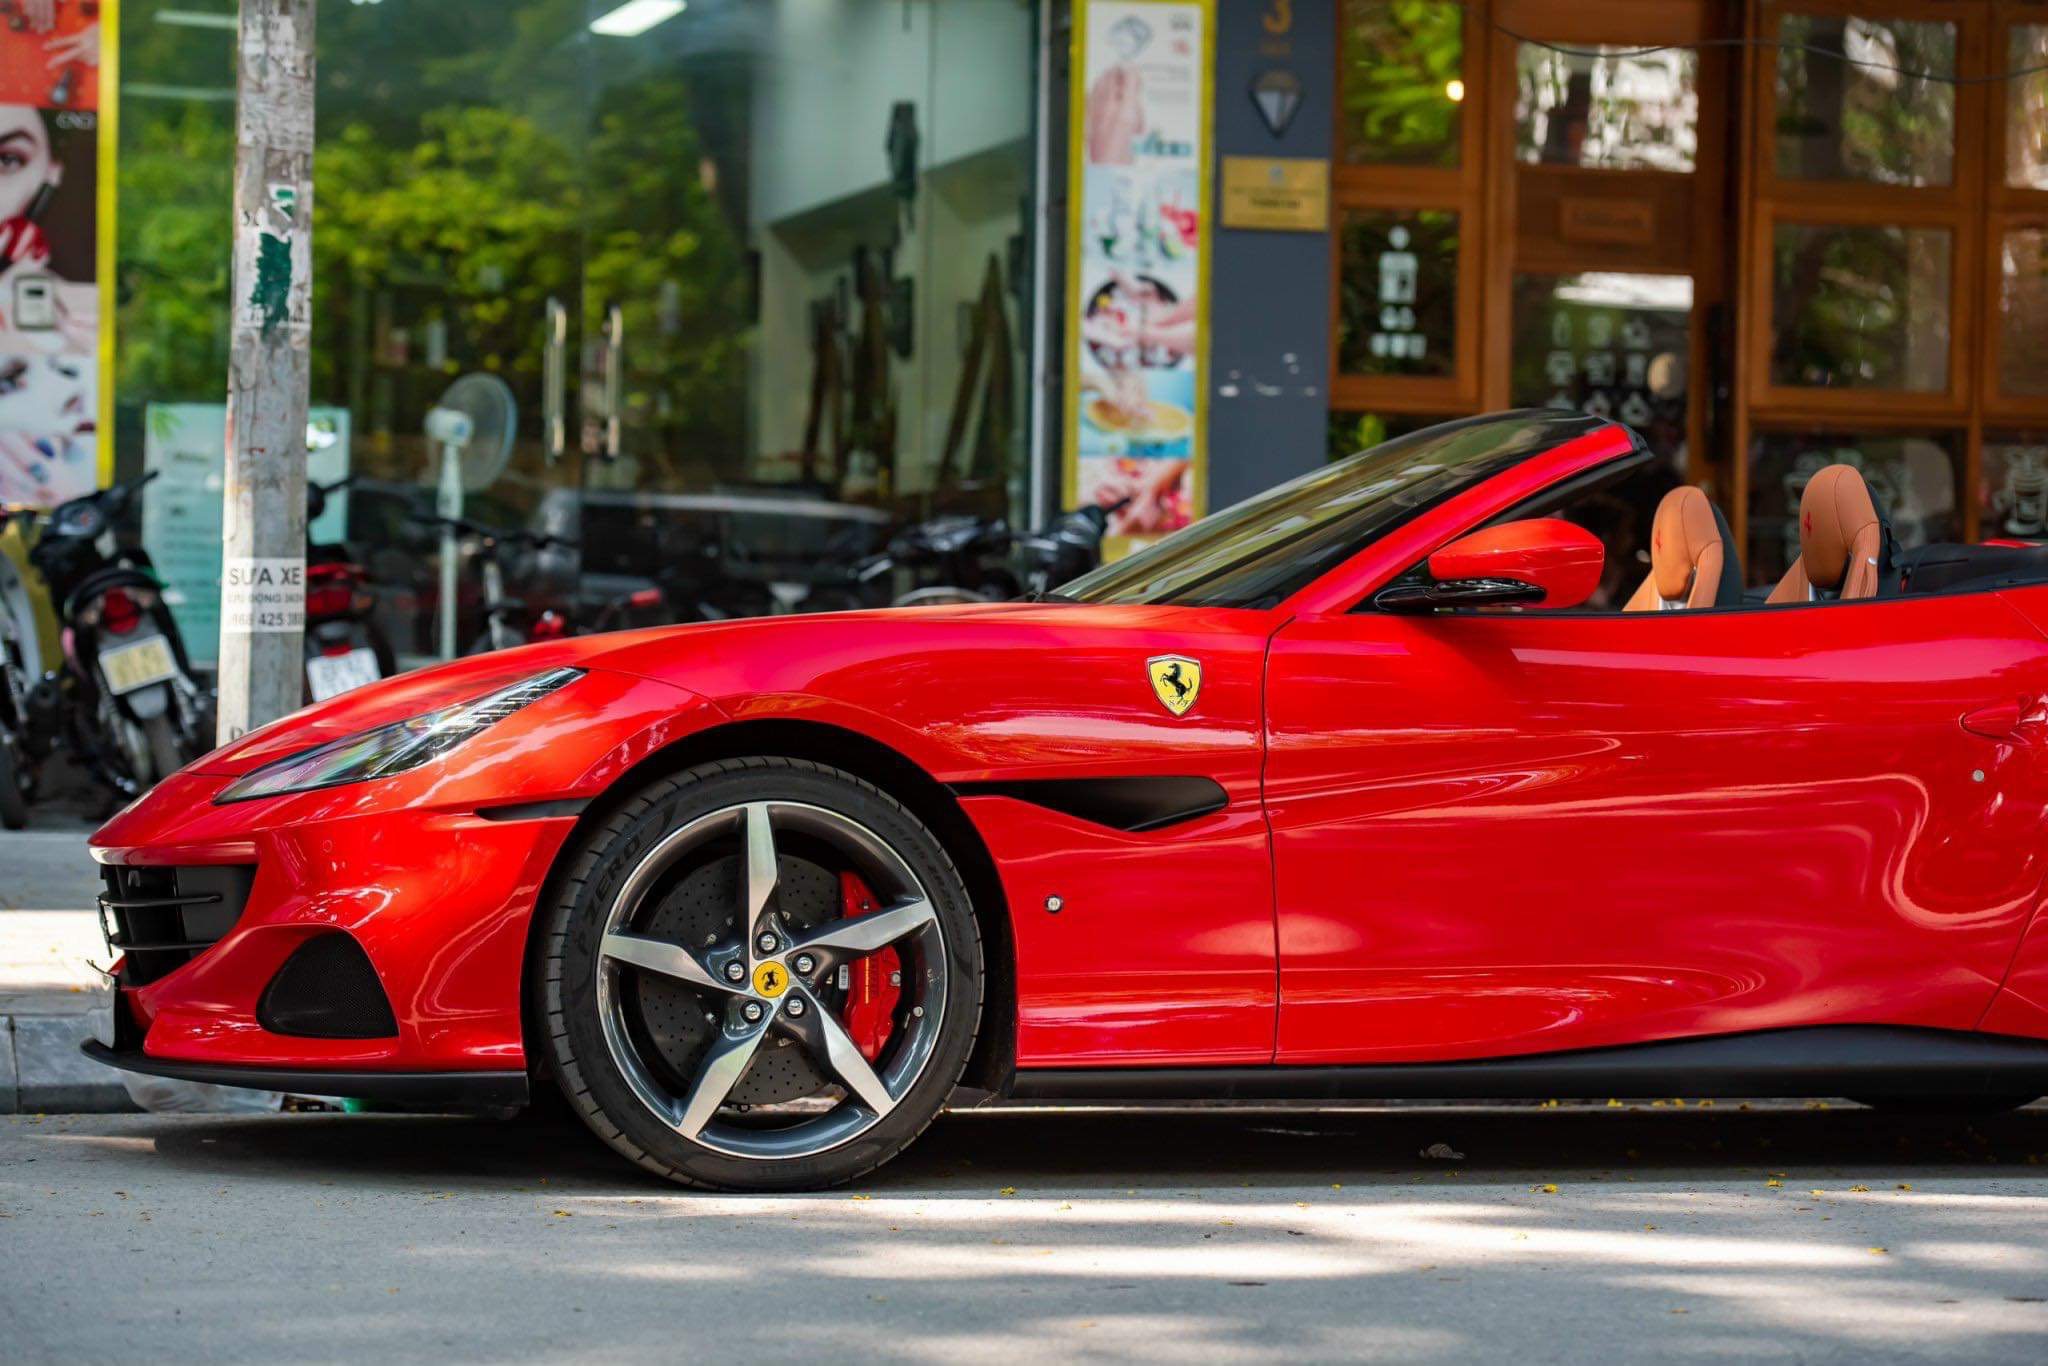 Ferrari Portofino M tìm được chủ nhân sau cả năm lên sàn xe cũ, người bán chia sẻ: Khách hàng hỏi mua và chuyển cọc chỉ trong 2 tiếng, giao xe ngay chiều hôm sau- Ảnh 6.